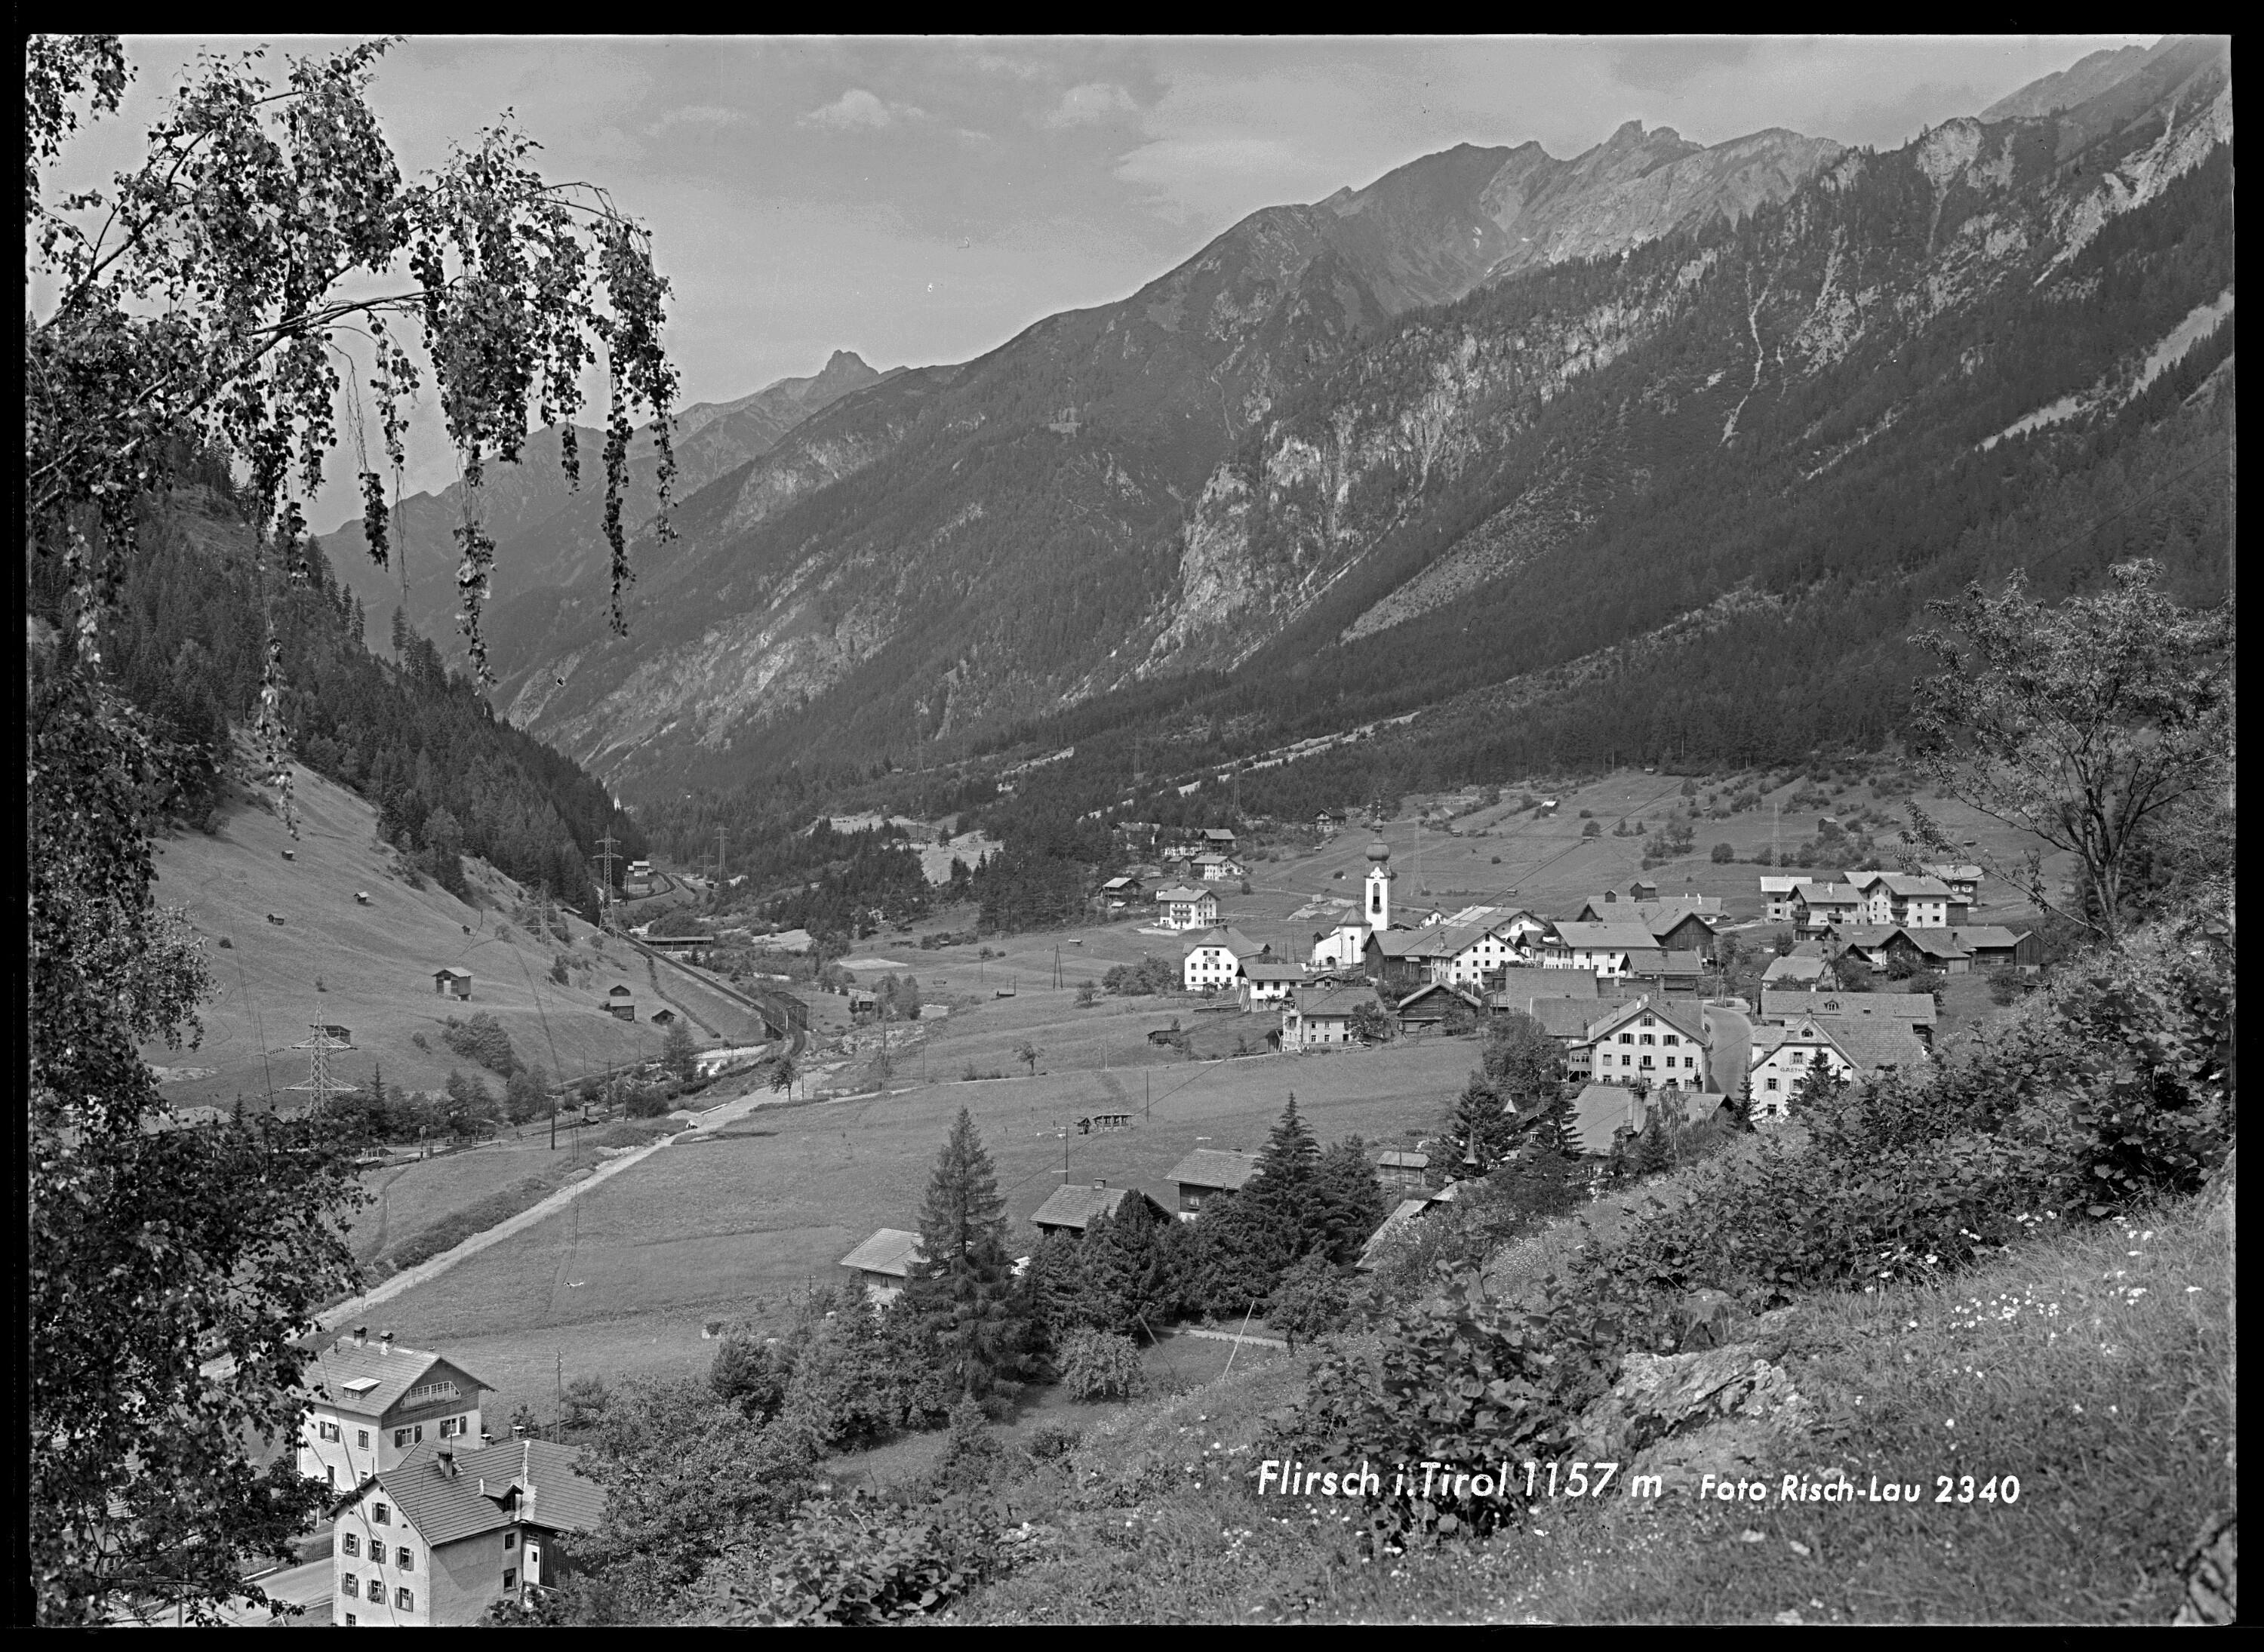 Flirsch in Tirol 1157 m></div>


    <hr>
    <div class=